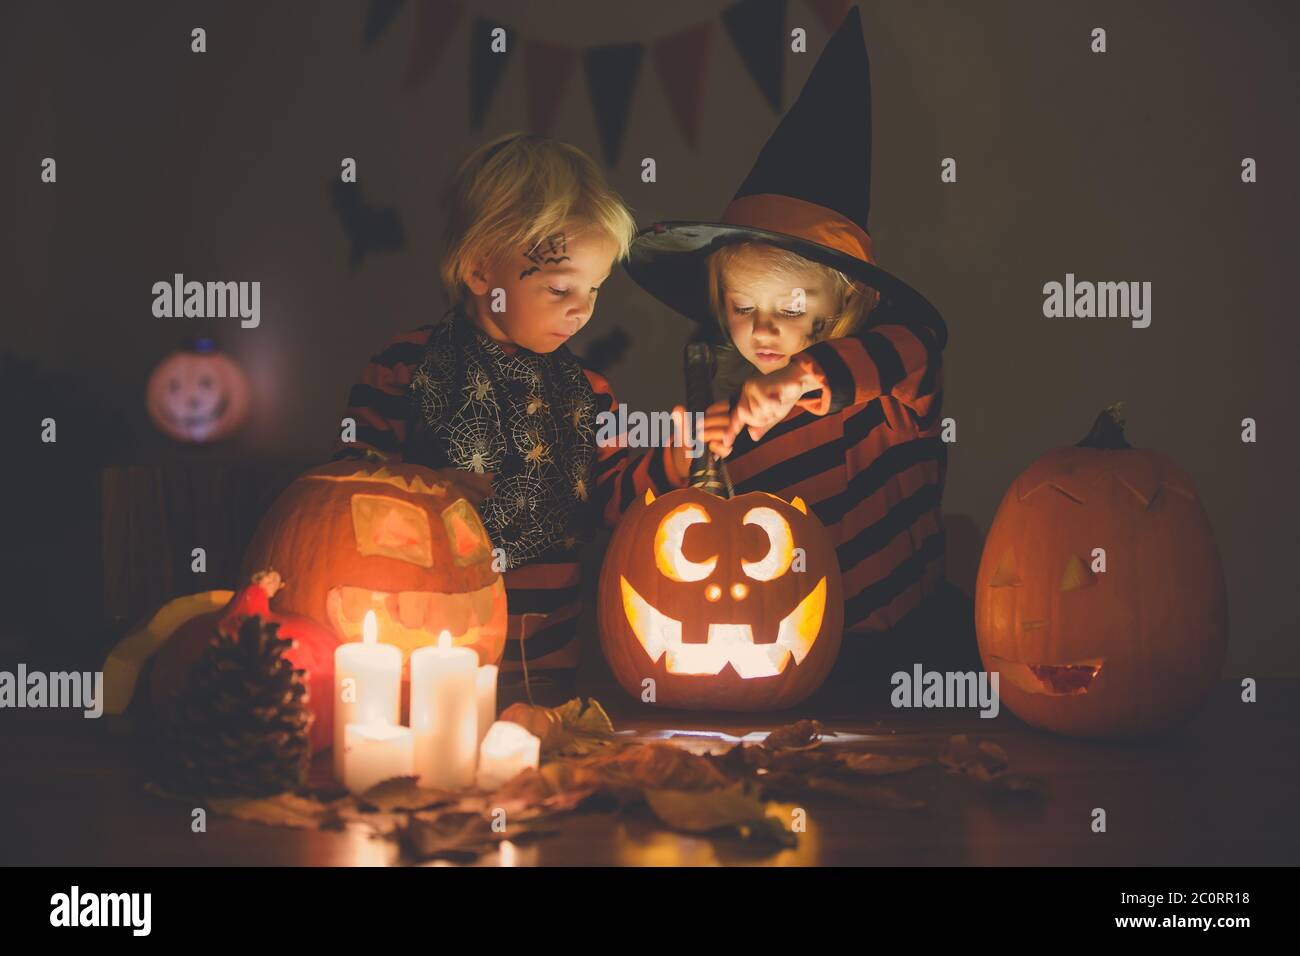 Adorables niños, niño y niña, jugando con calabaza tallada de Halloween y decoración en casa Foto de stock